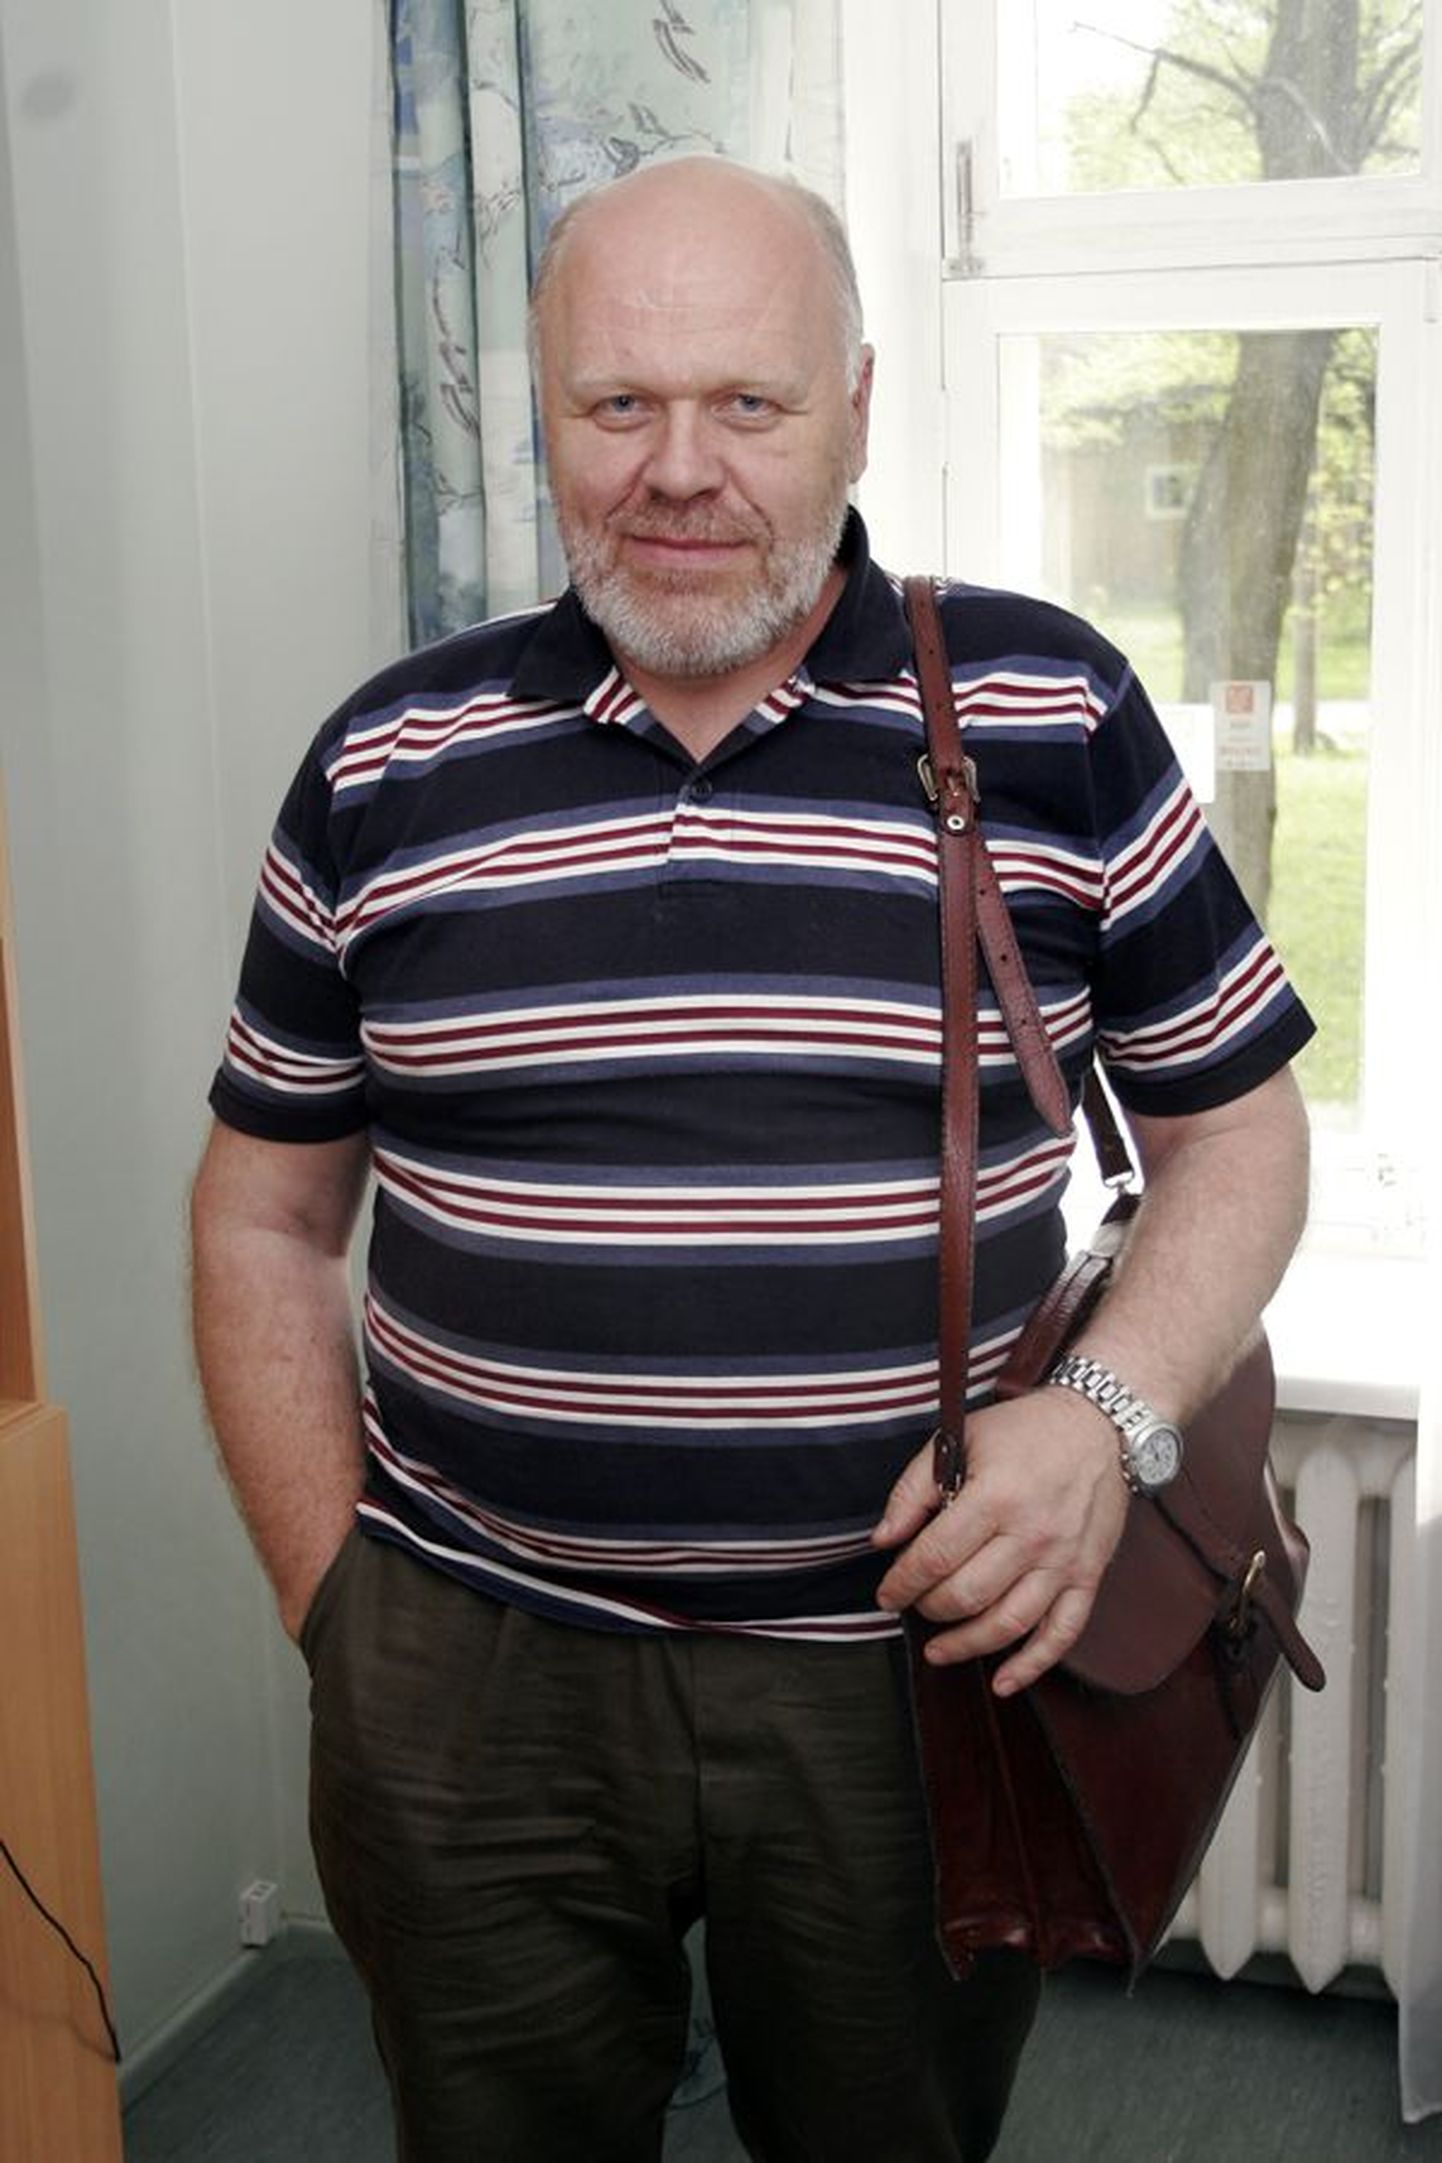 Seesama kott psühhiaater Viktor Sergejevi õlal päästis ta patsiendi rünnaku ajal hullemast.